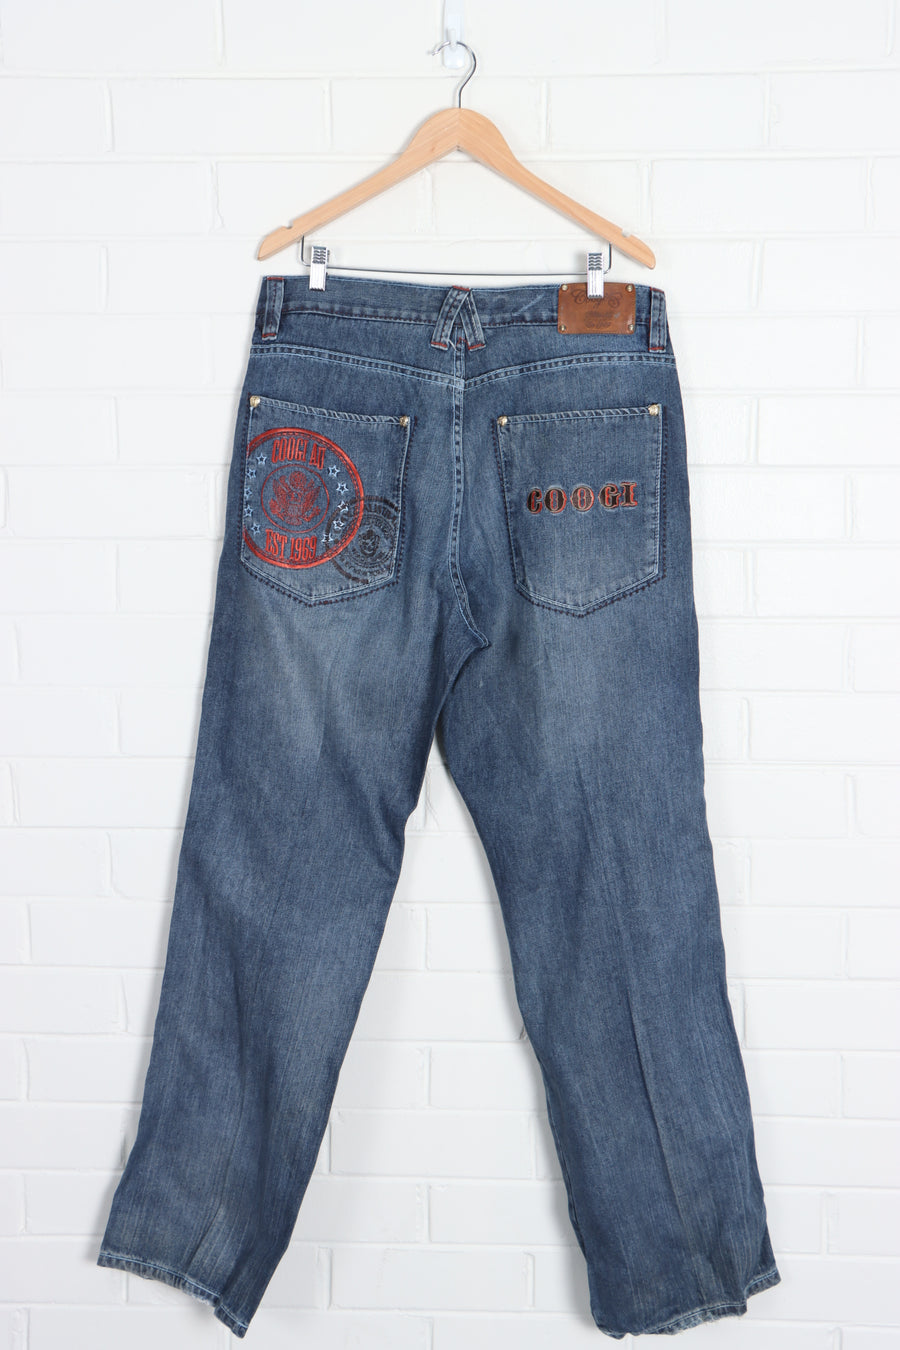 COOGI Embroidered Pocket Jeans (36 x 34) - Vintage Sole Melbourne